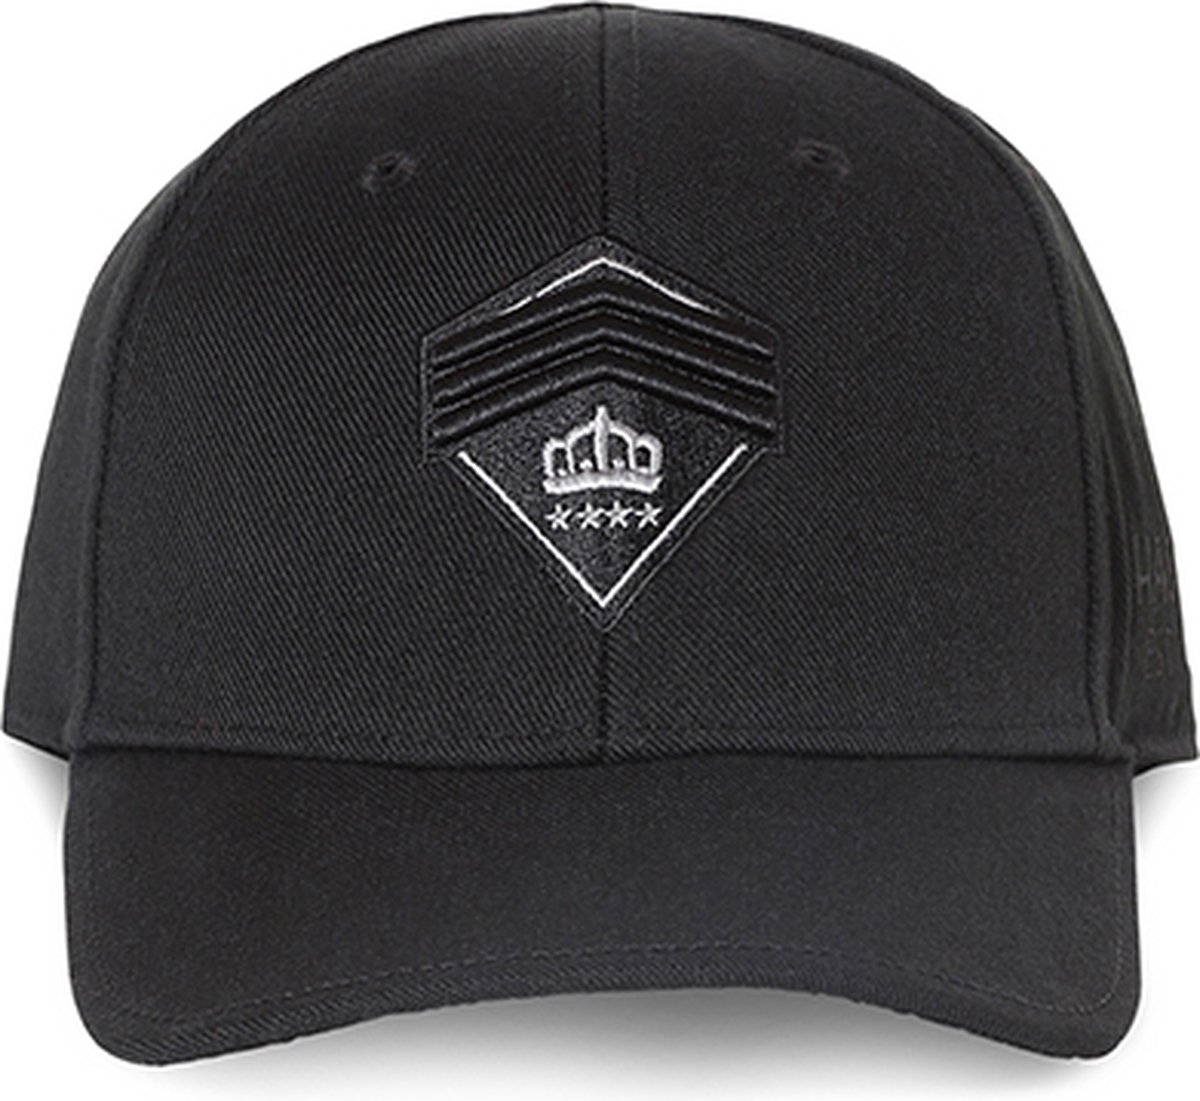 Hassing1894 model EVIDENT BLACK - cap - baseball cap - zwart - verstelbare pet - trendy - stijlvol - modieus - het hele jaar door